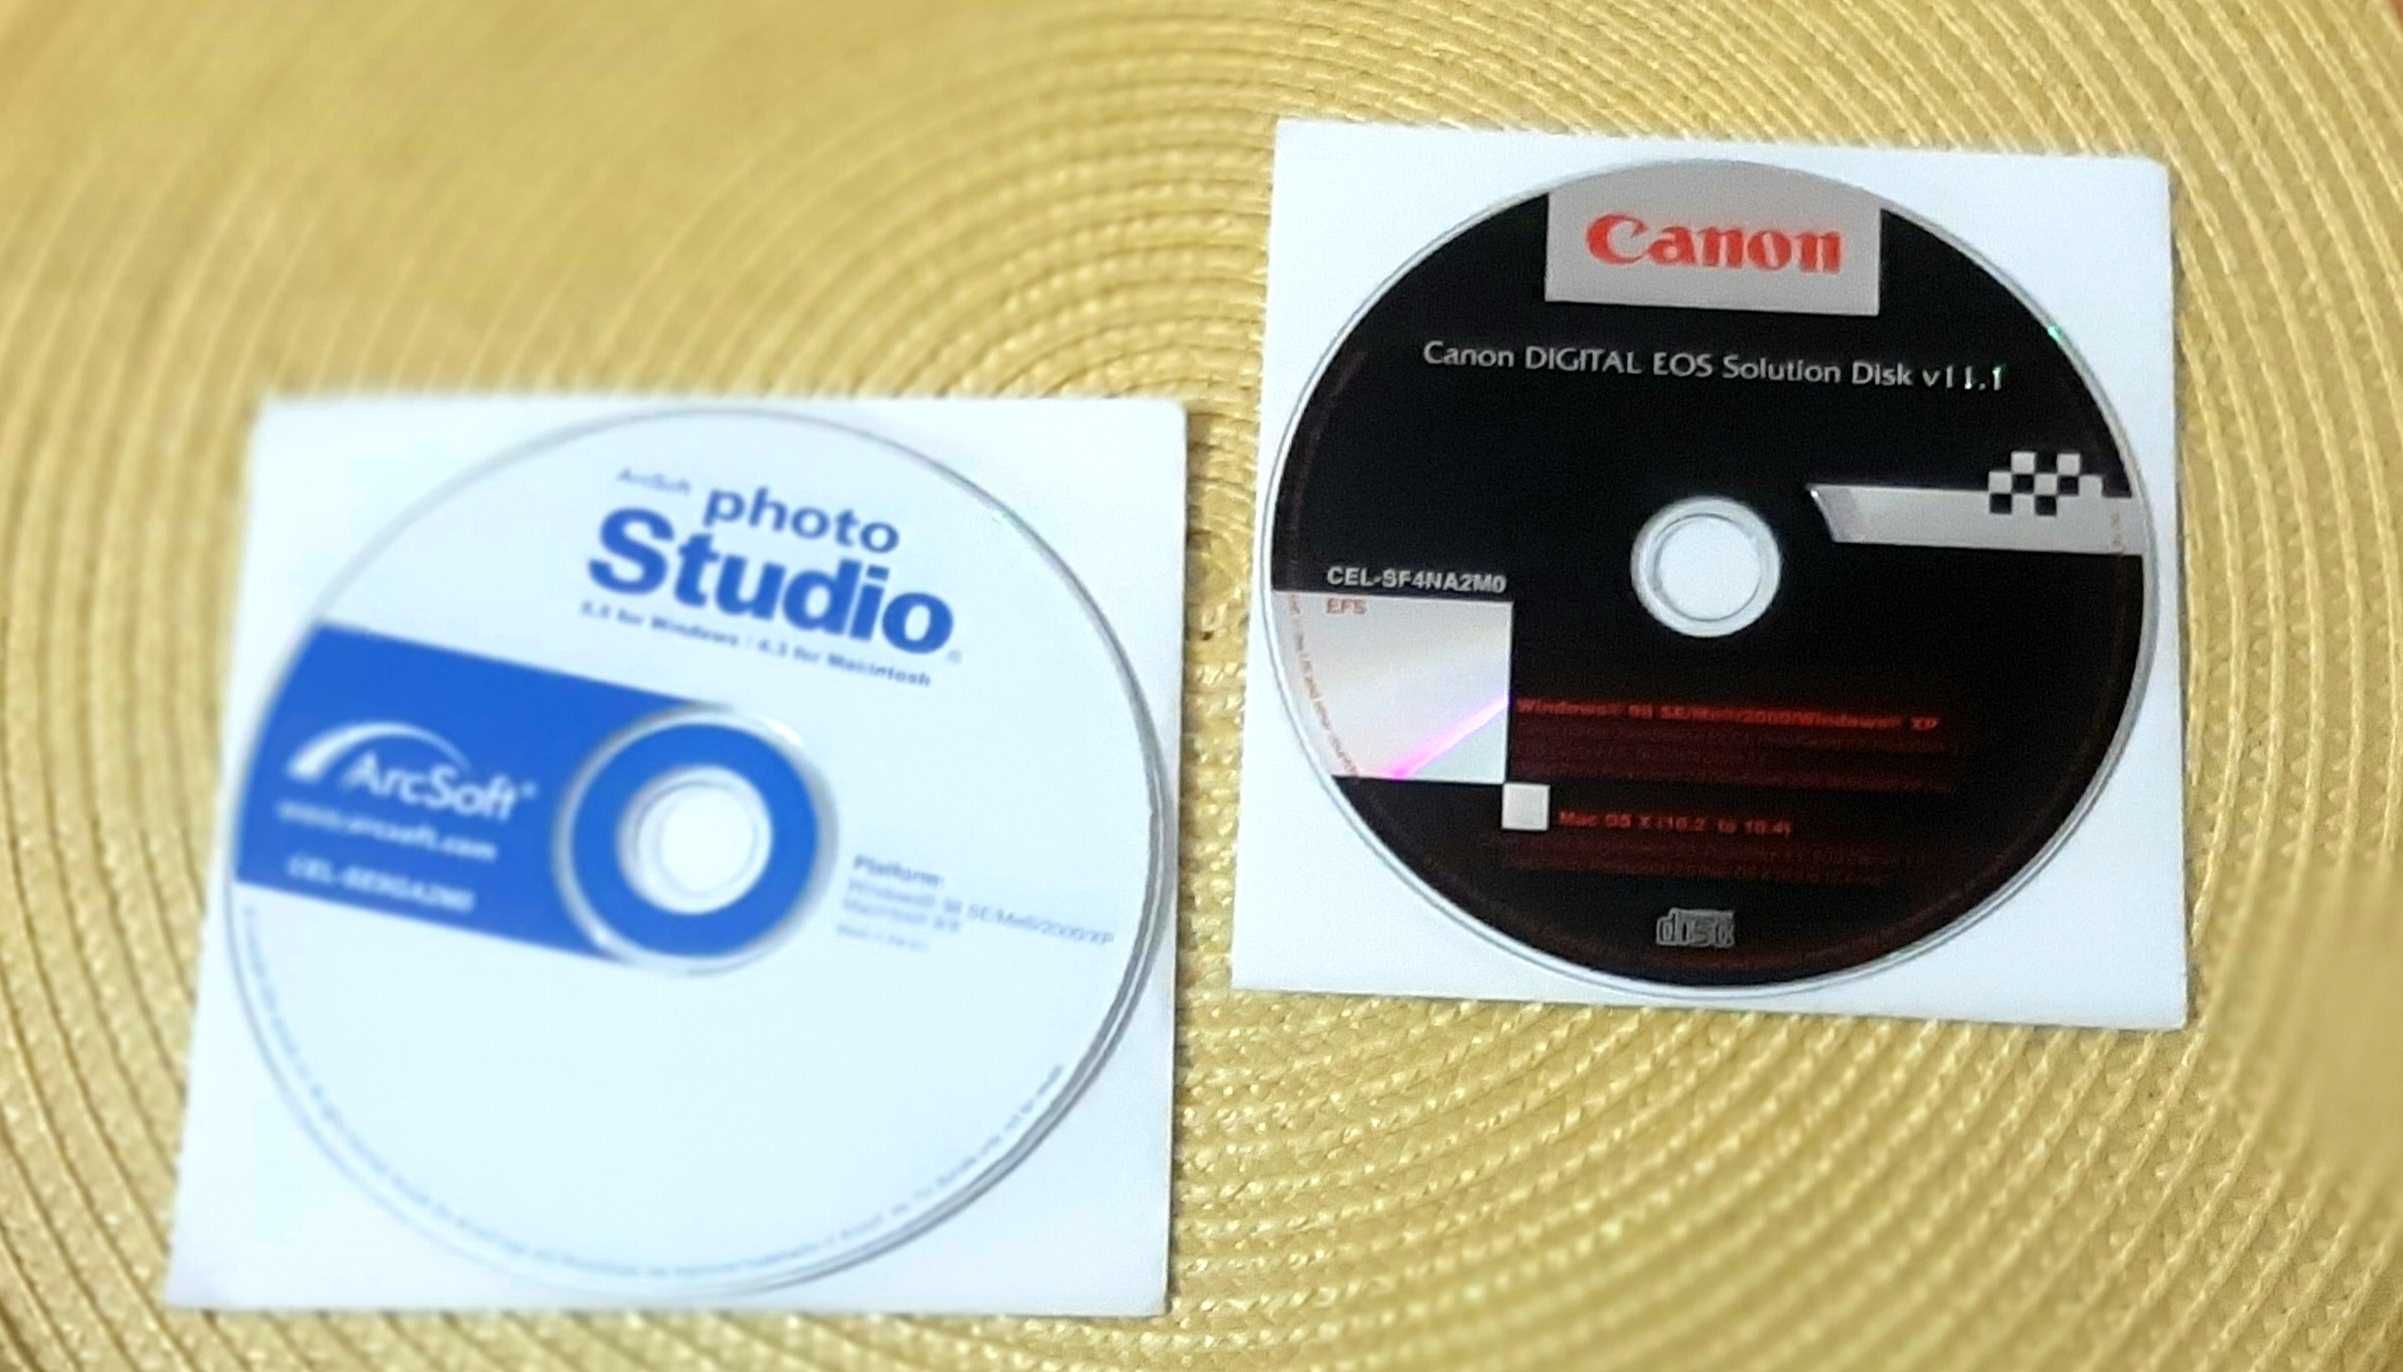 CANON.компакт-диск с инструкциями;диск с програмным обеспечением.